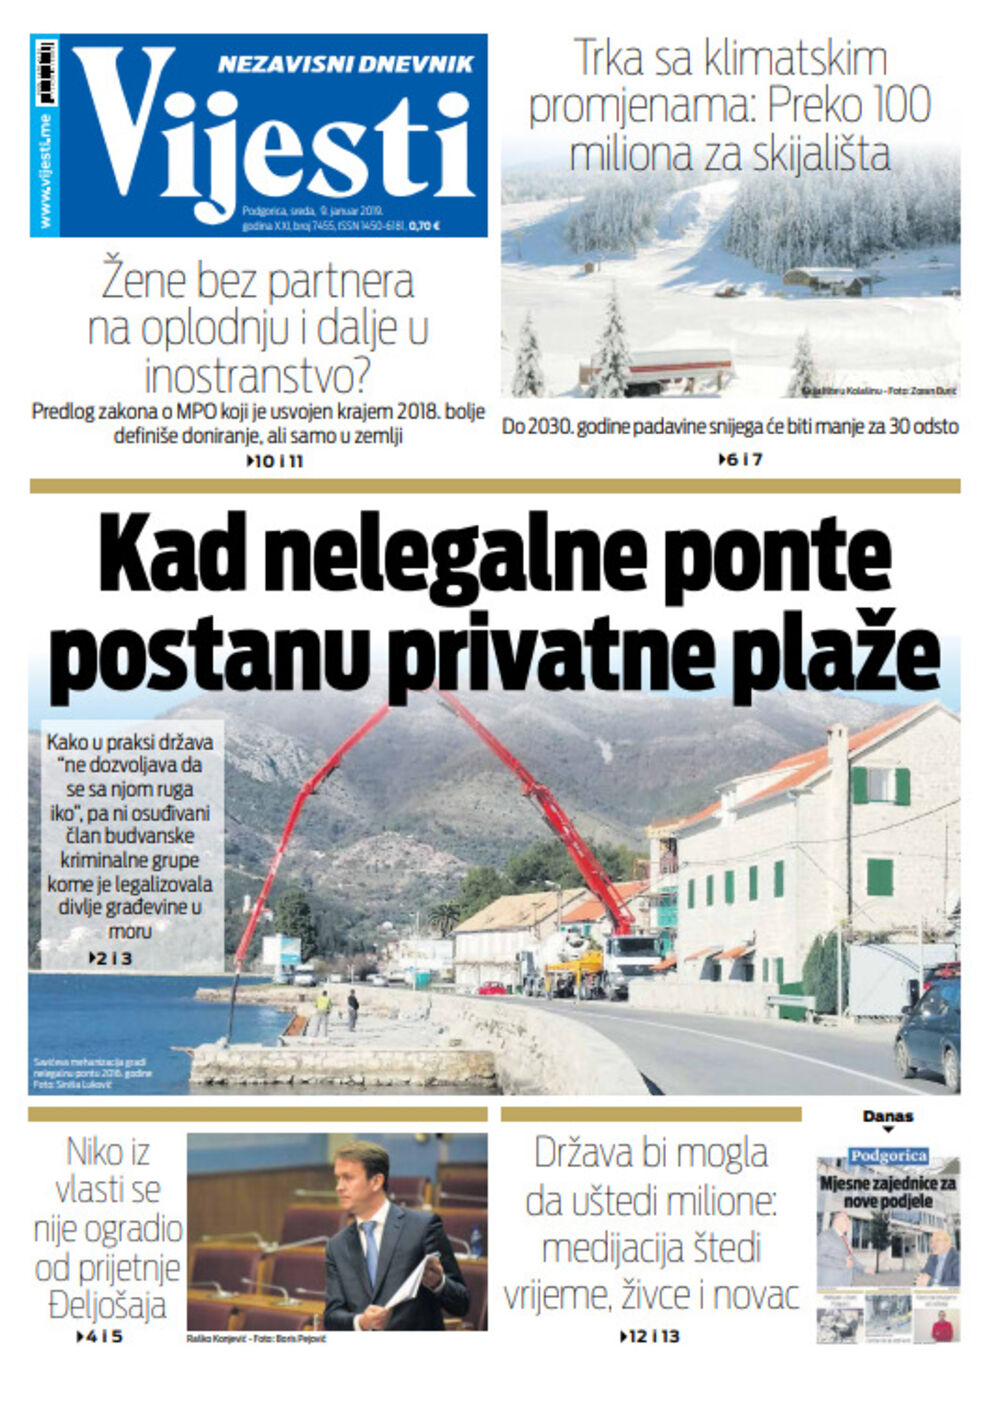 Naslovna strana Vijesti za 9. januar, Foto: Vijesti